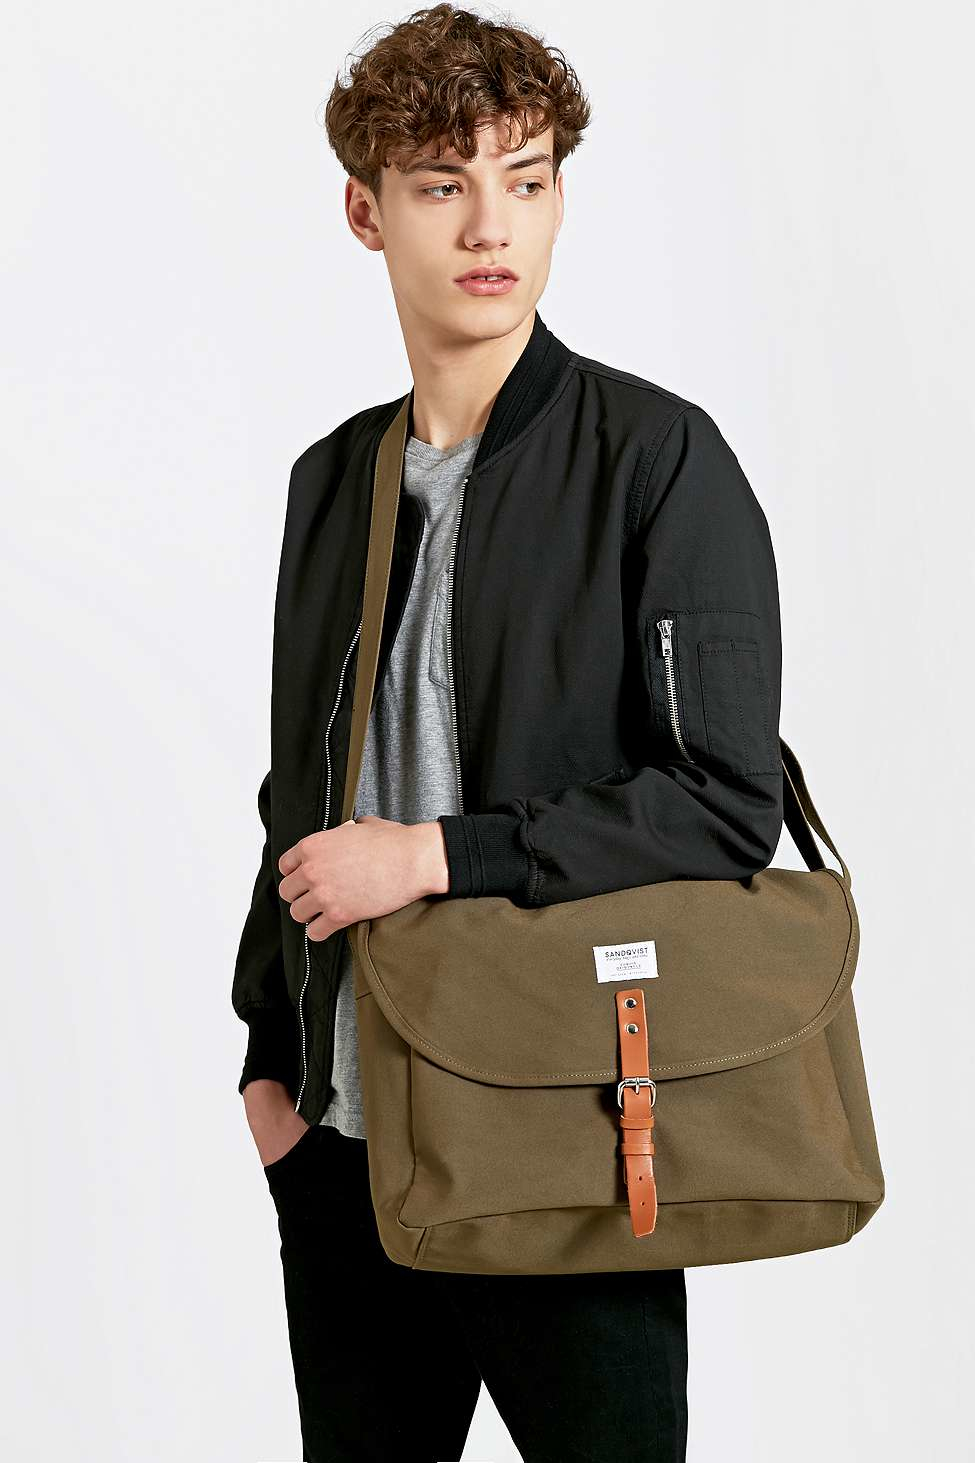 Sandqvist Jack Messenger Bag In Olive in Brown for Men | Lyst UK